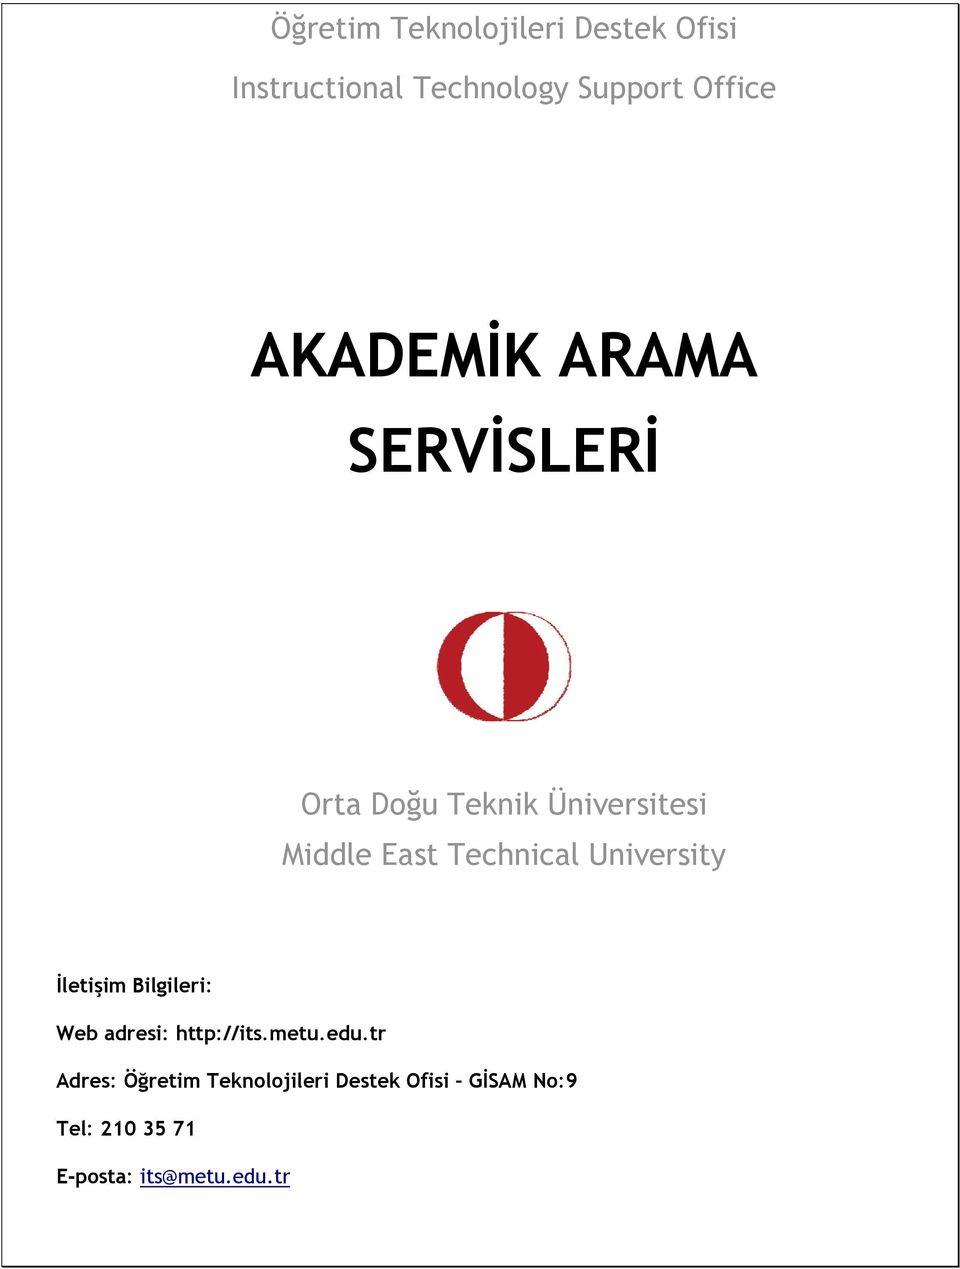 University İletişim Bilgileri: Web adresi: http://its.metu.edu.